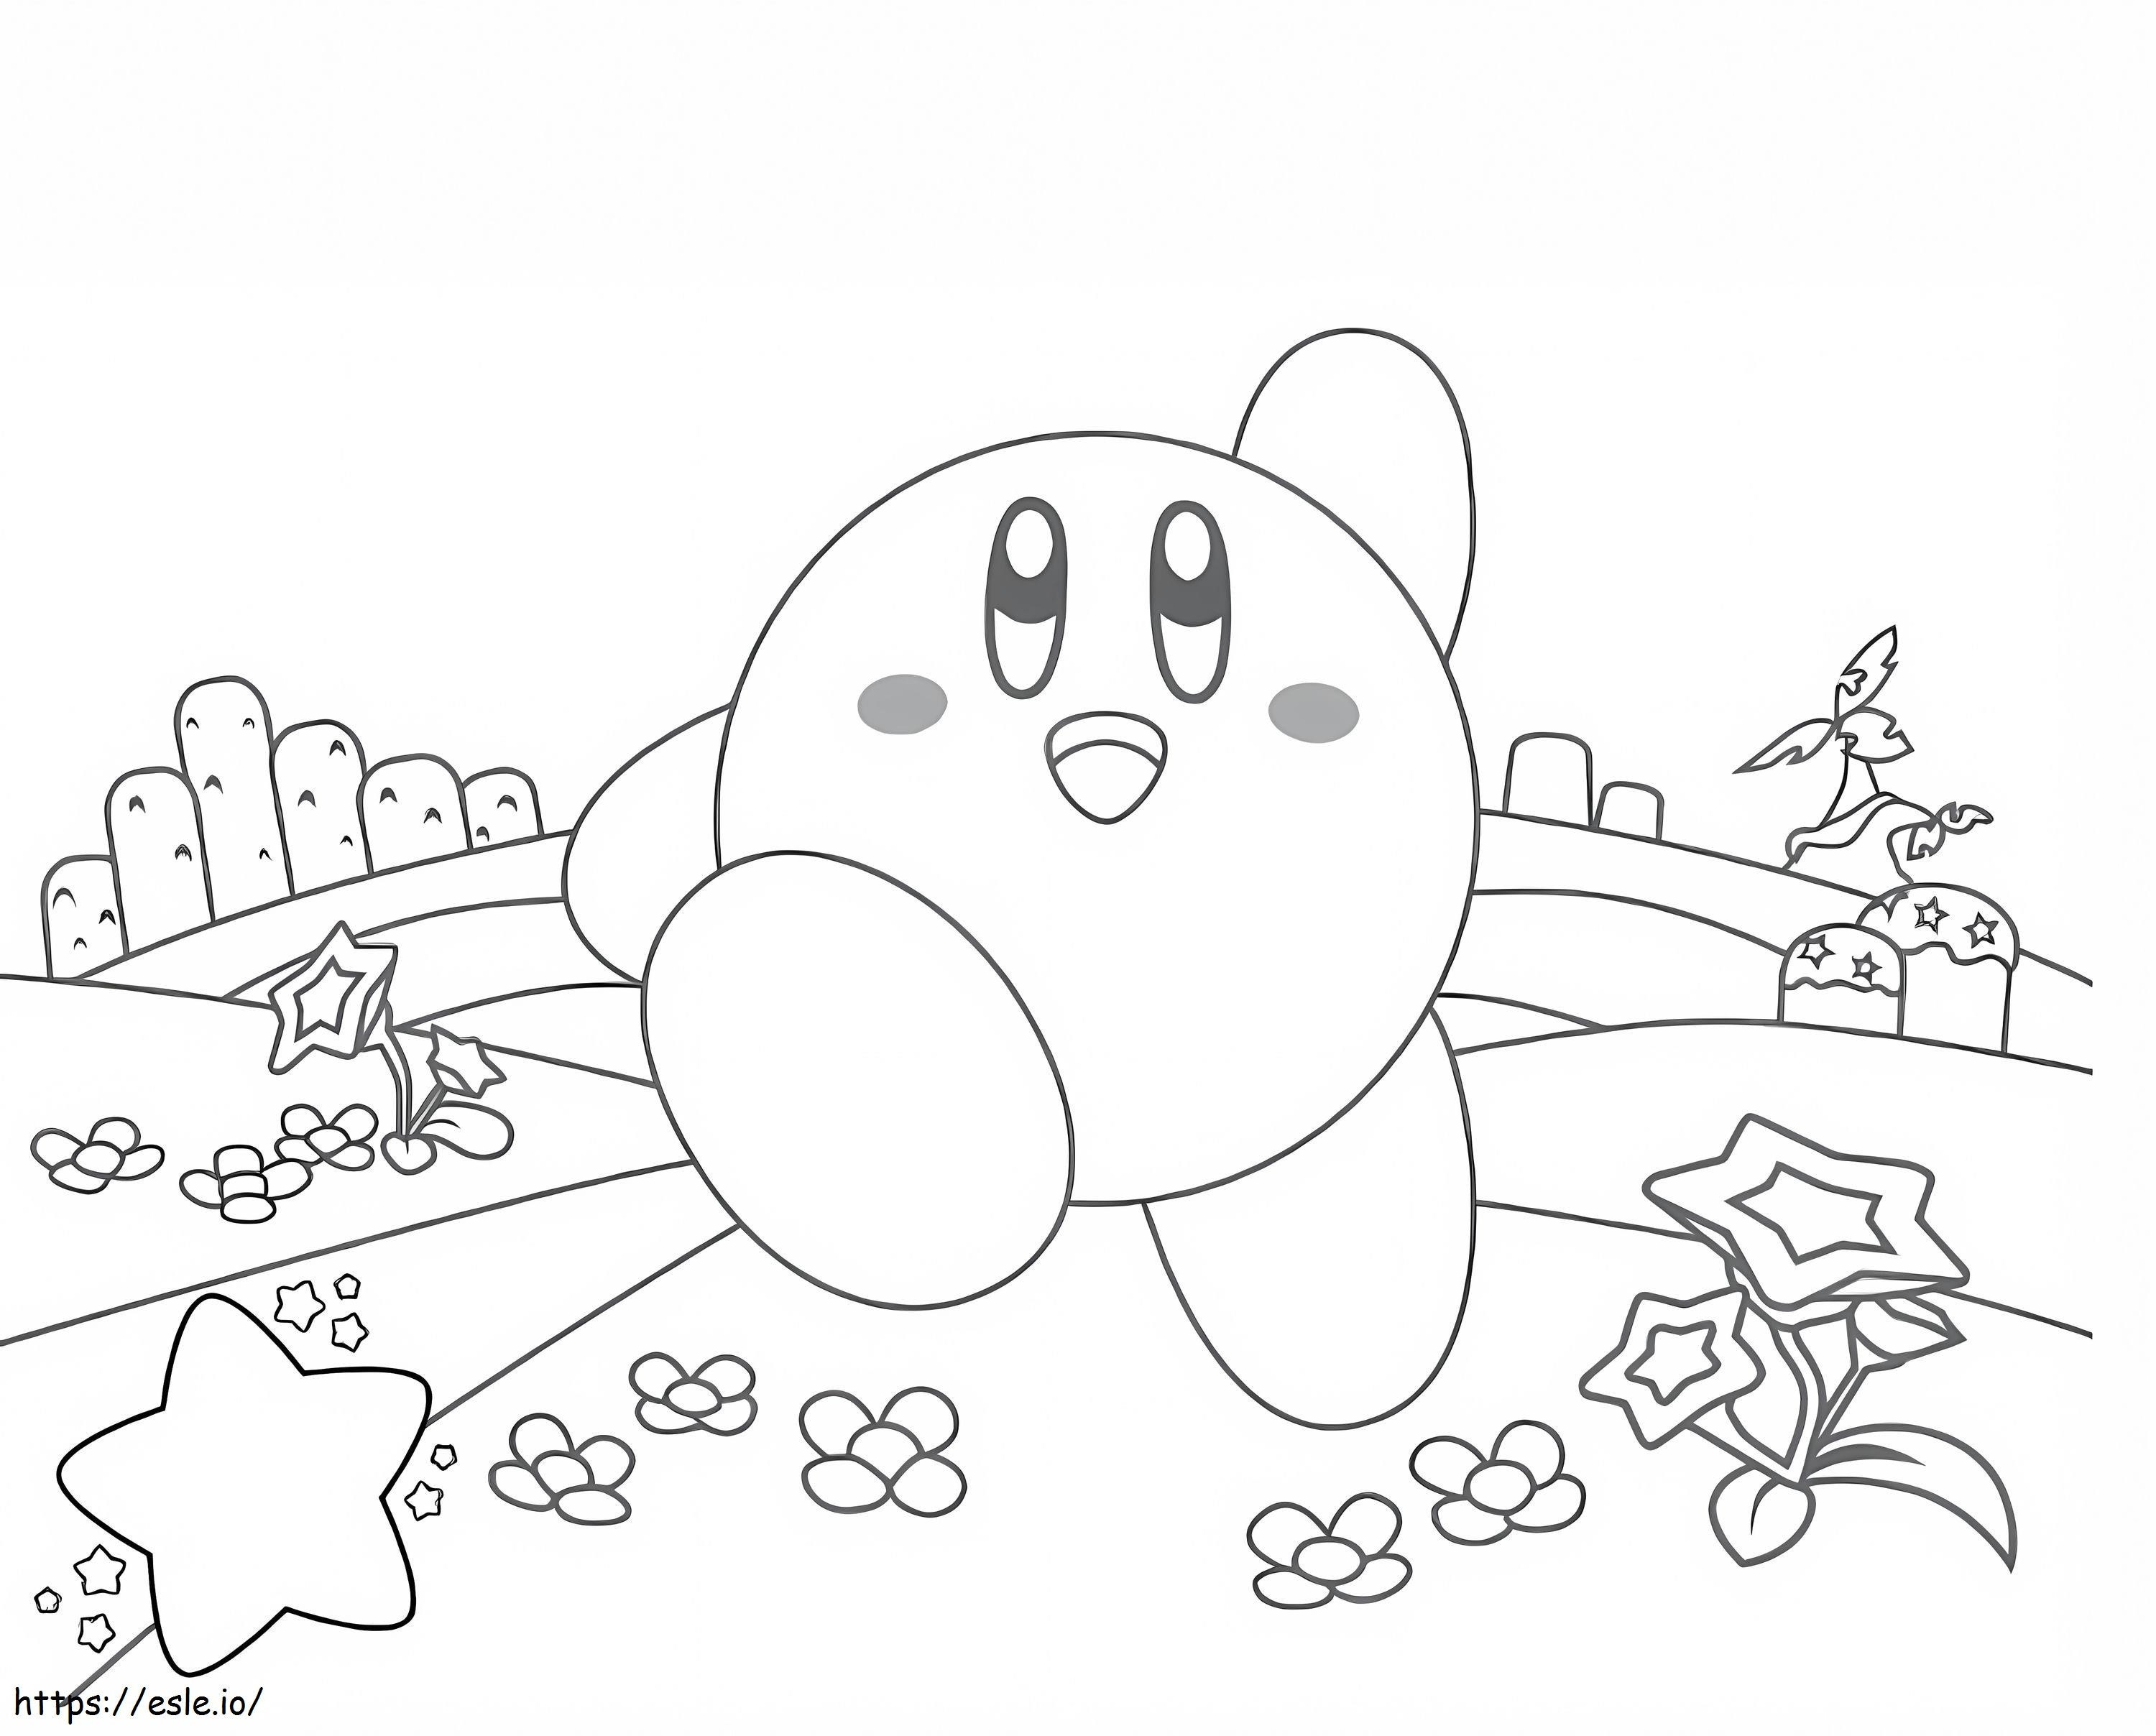 Viel Spaß beim Kirby-Laufen ausmalbilder